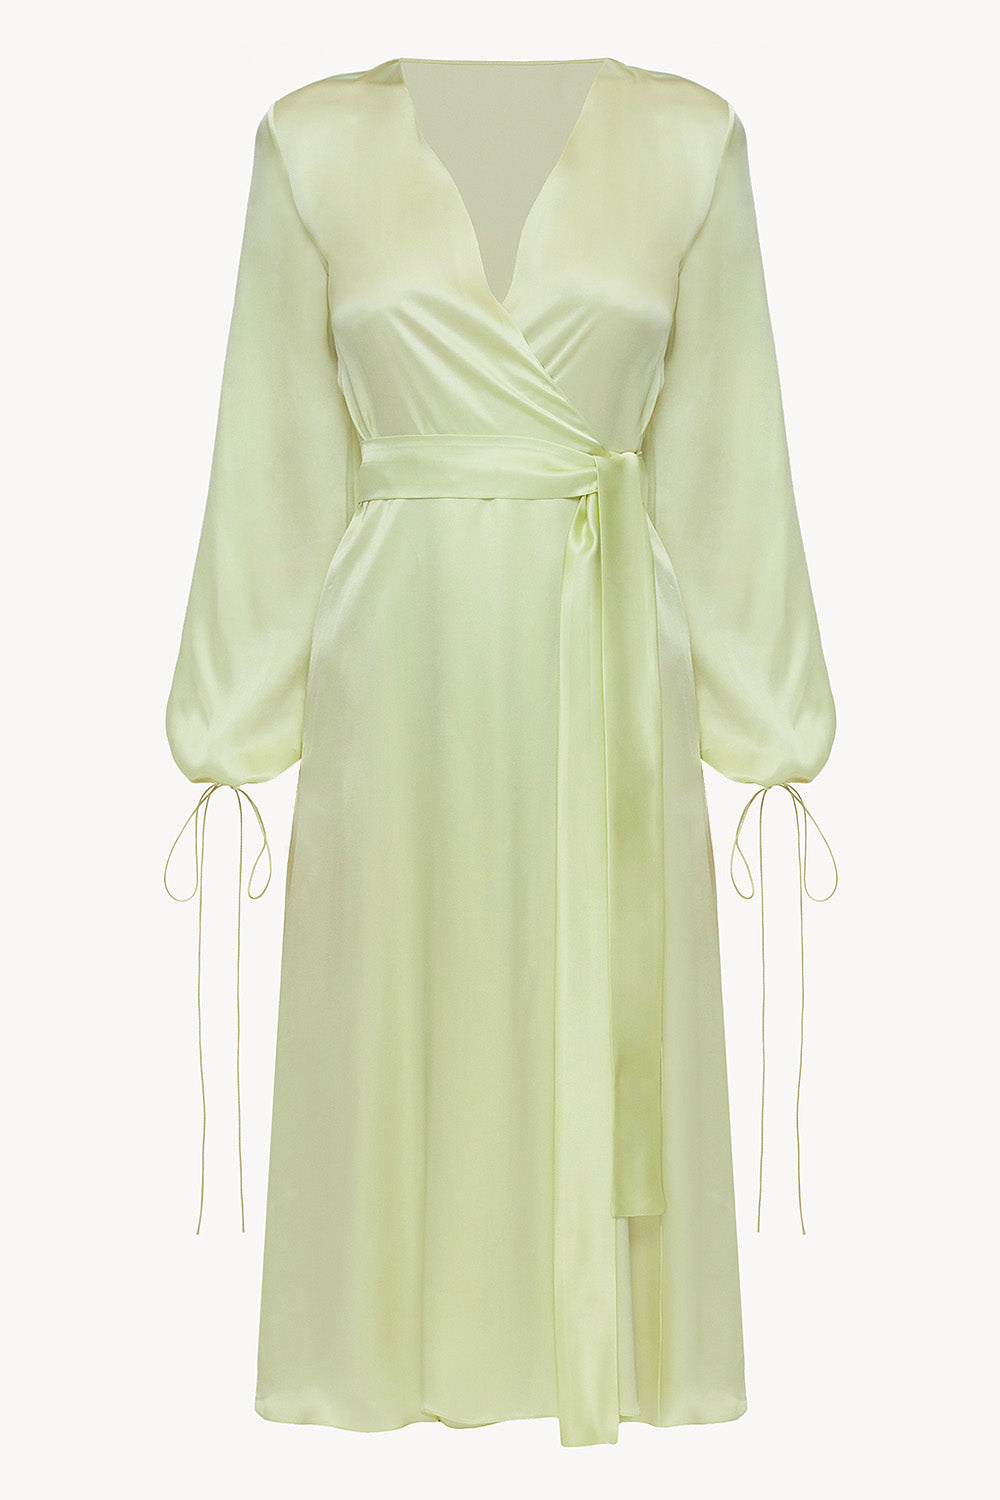 Wrap silk dress in sorbet green